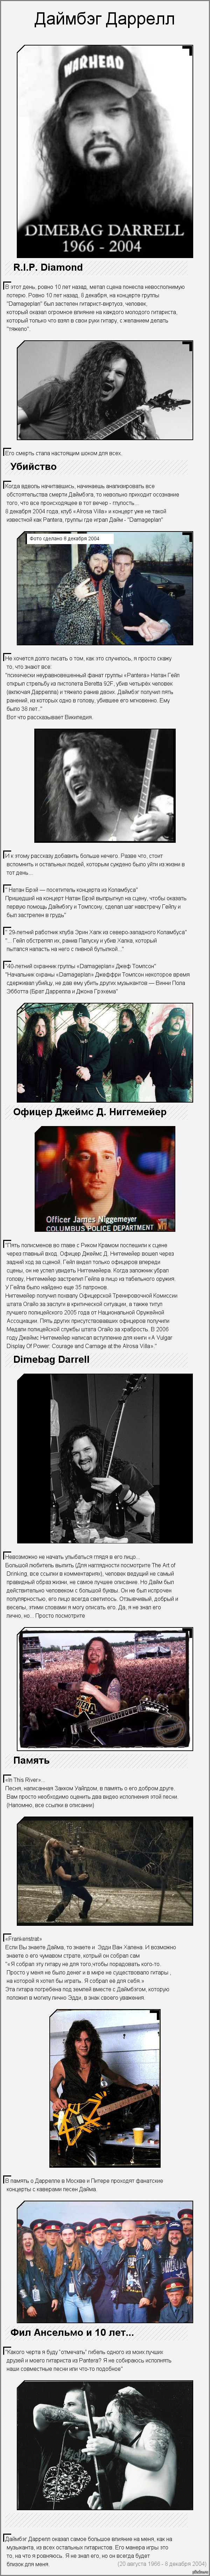 R.I.P. Dimebag Darrell     <a href="http://pikabu.ru/story/daymbyeg_darrell__2566008">http://pikabu.ru/story/_2566008</a>